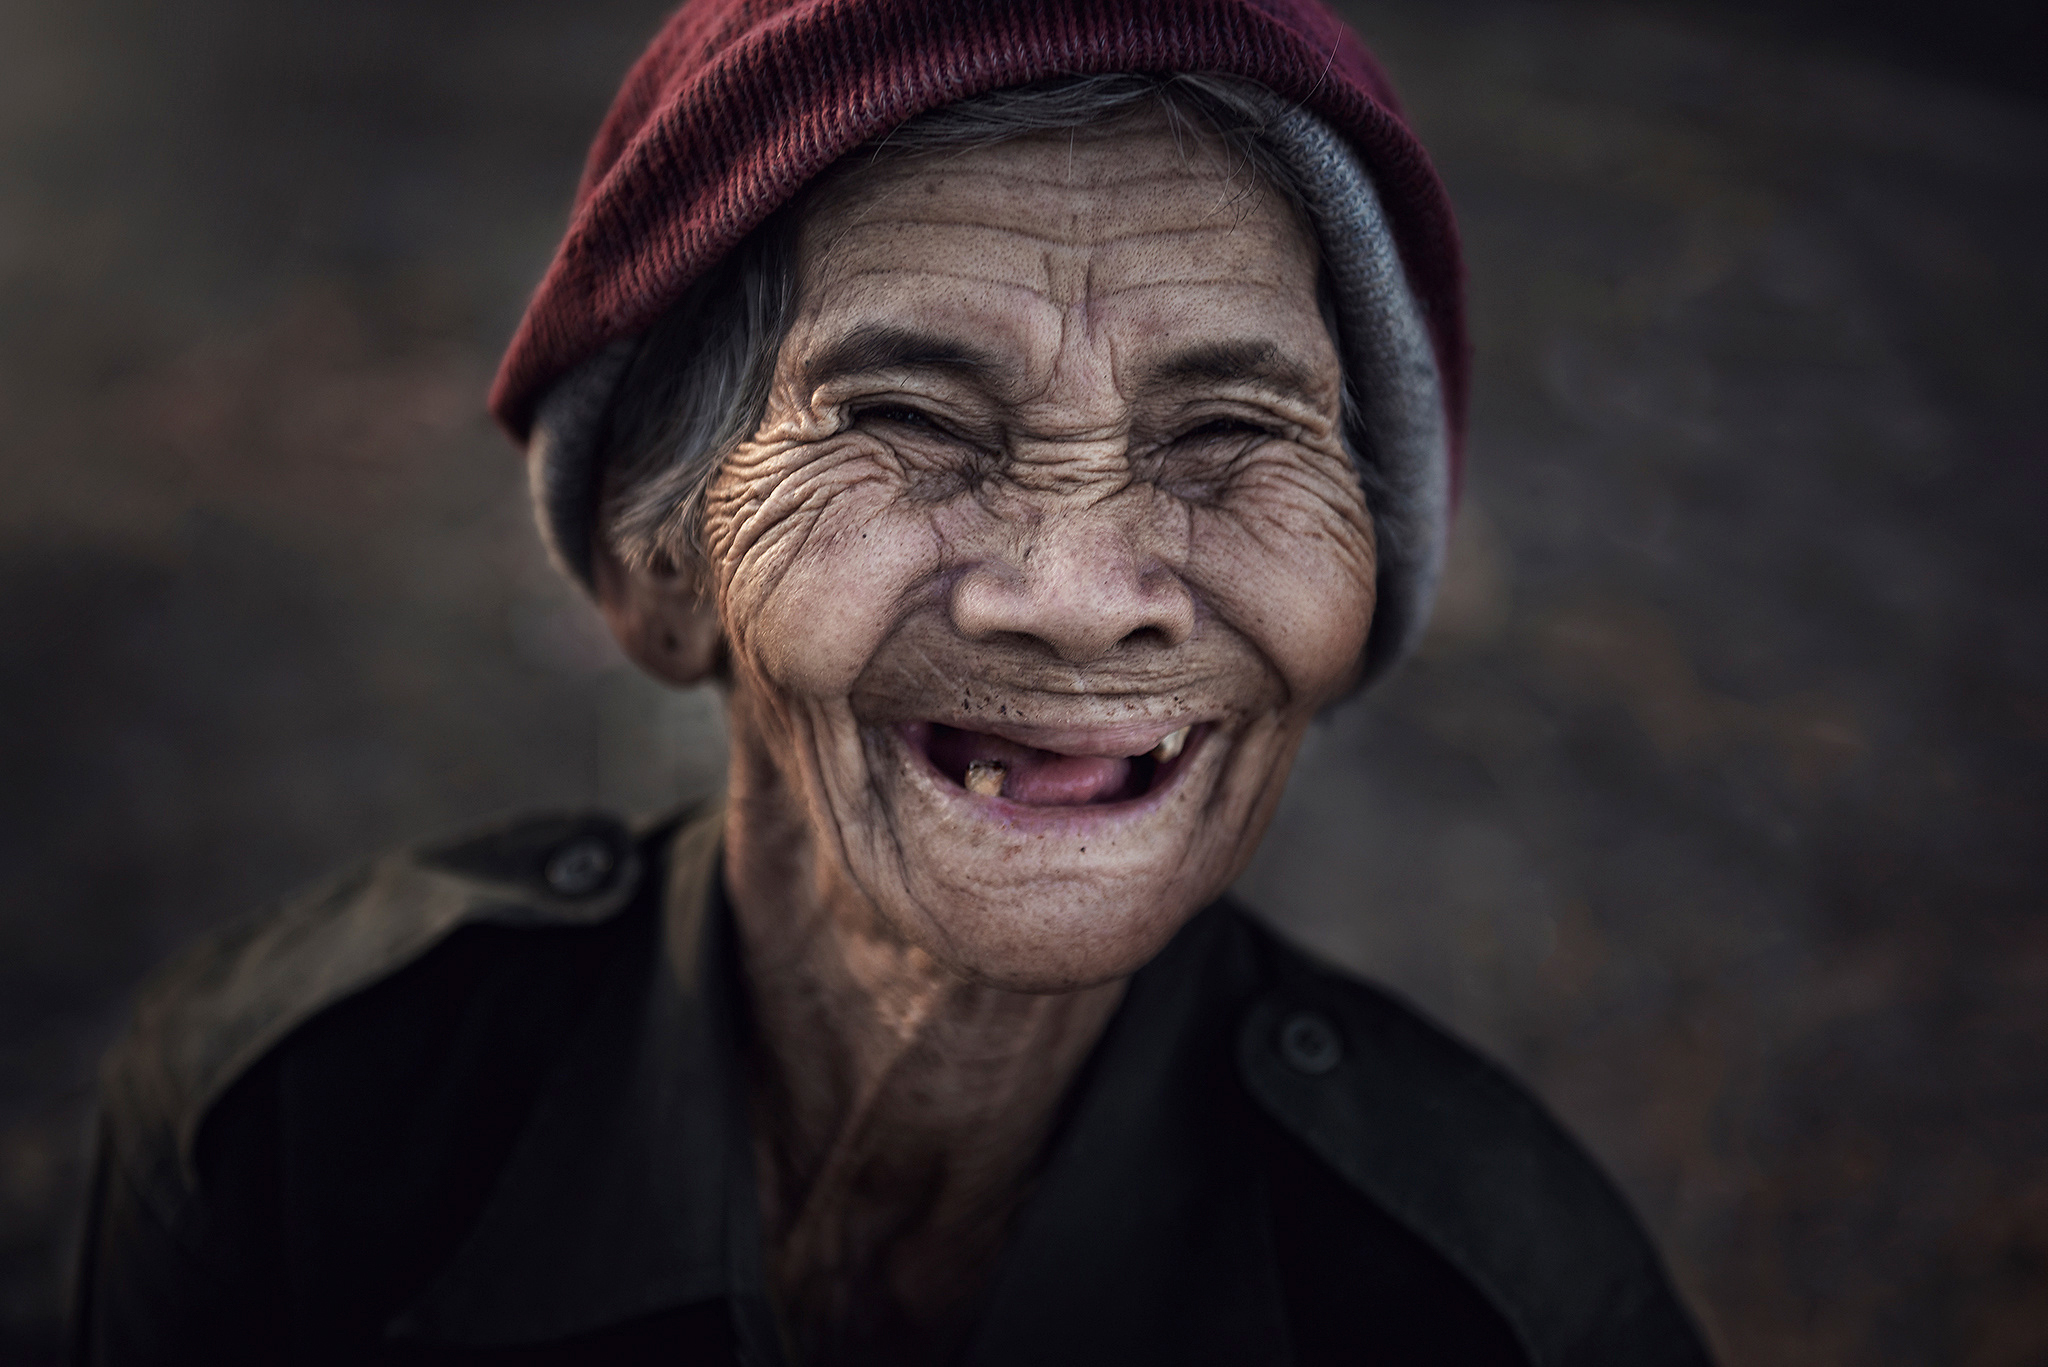 Бабушка без зубов. Беззубая улыбка старика.